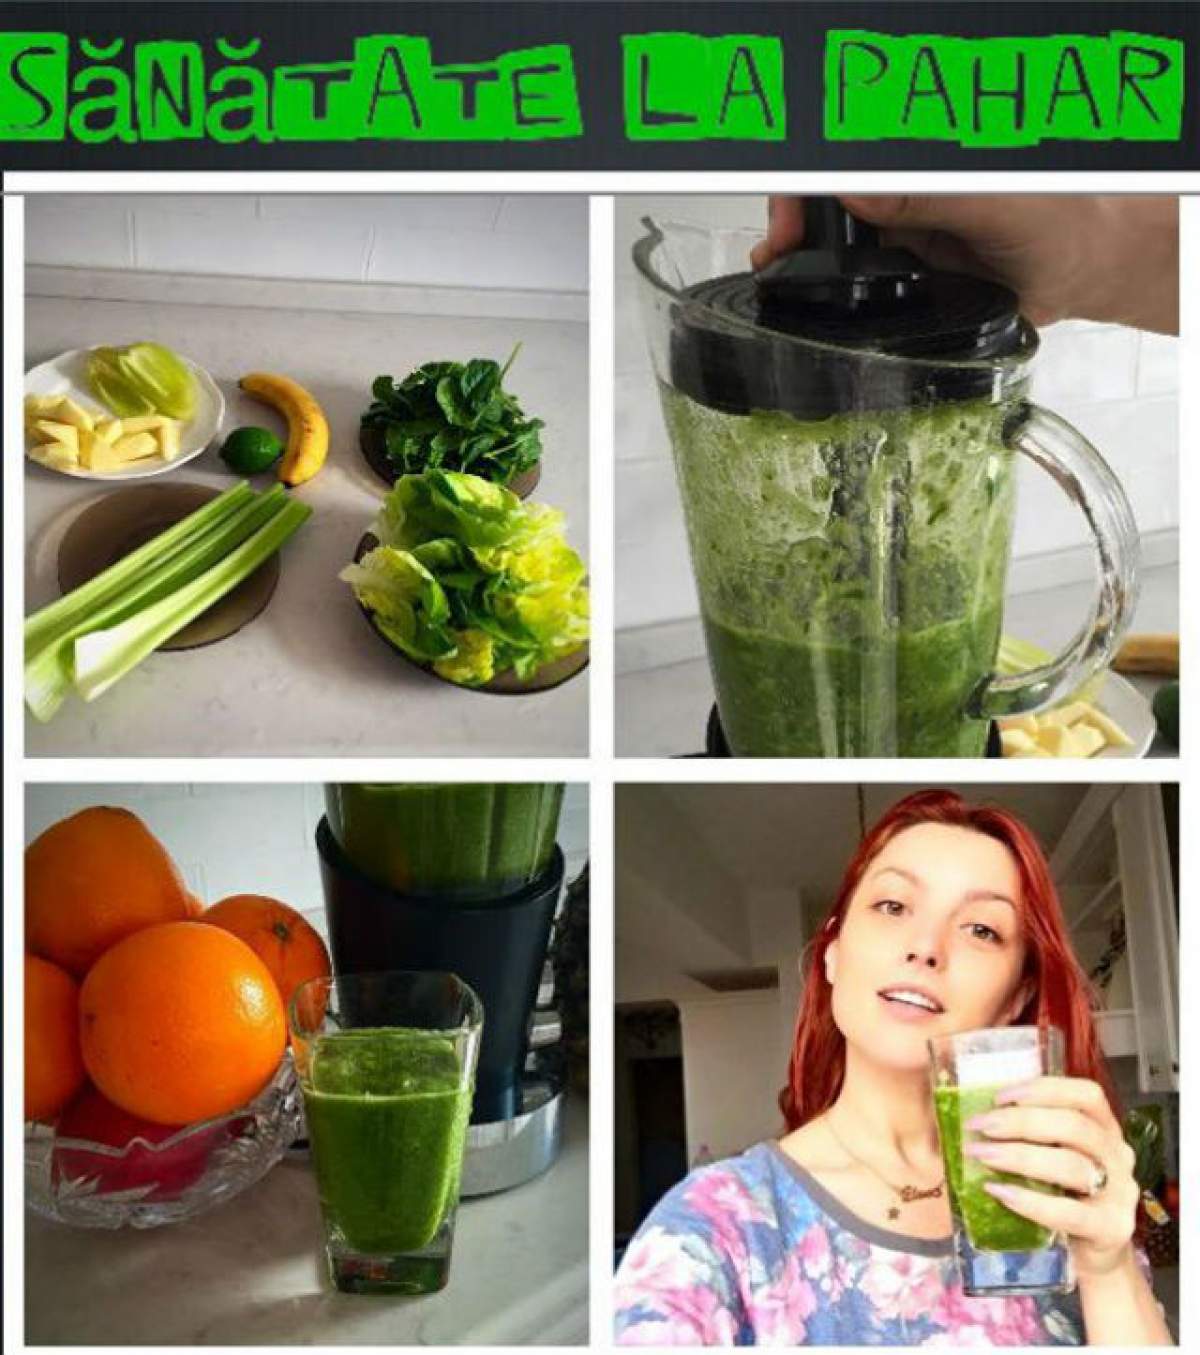 REŢETA ZILEI - MIERCURI: Elena Gheorghe recomandă green smoothie pentru piele frumoasă şi păr sănătos